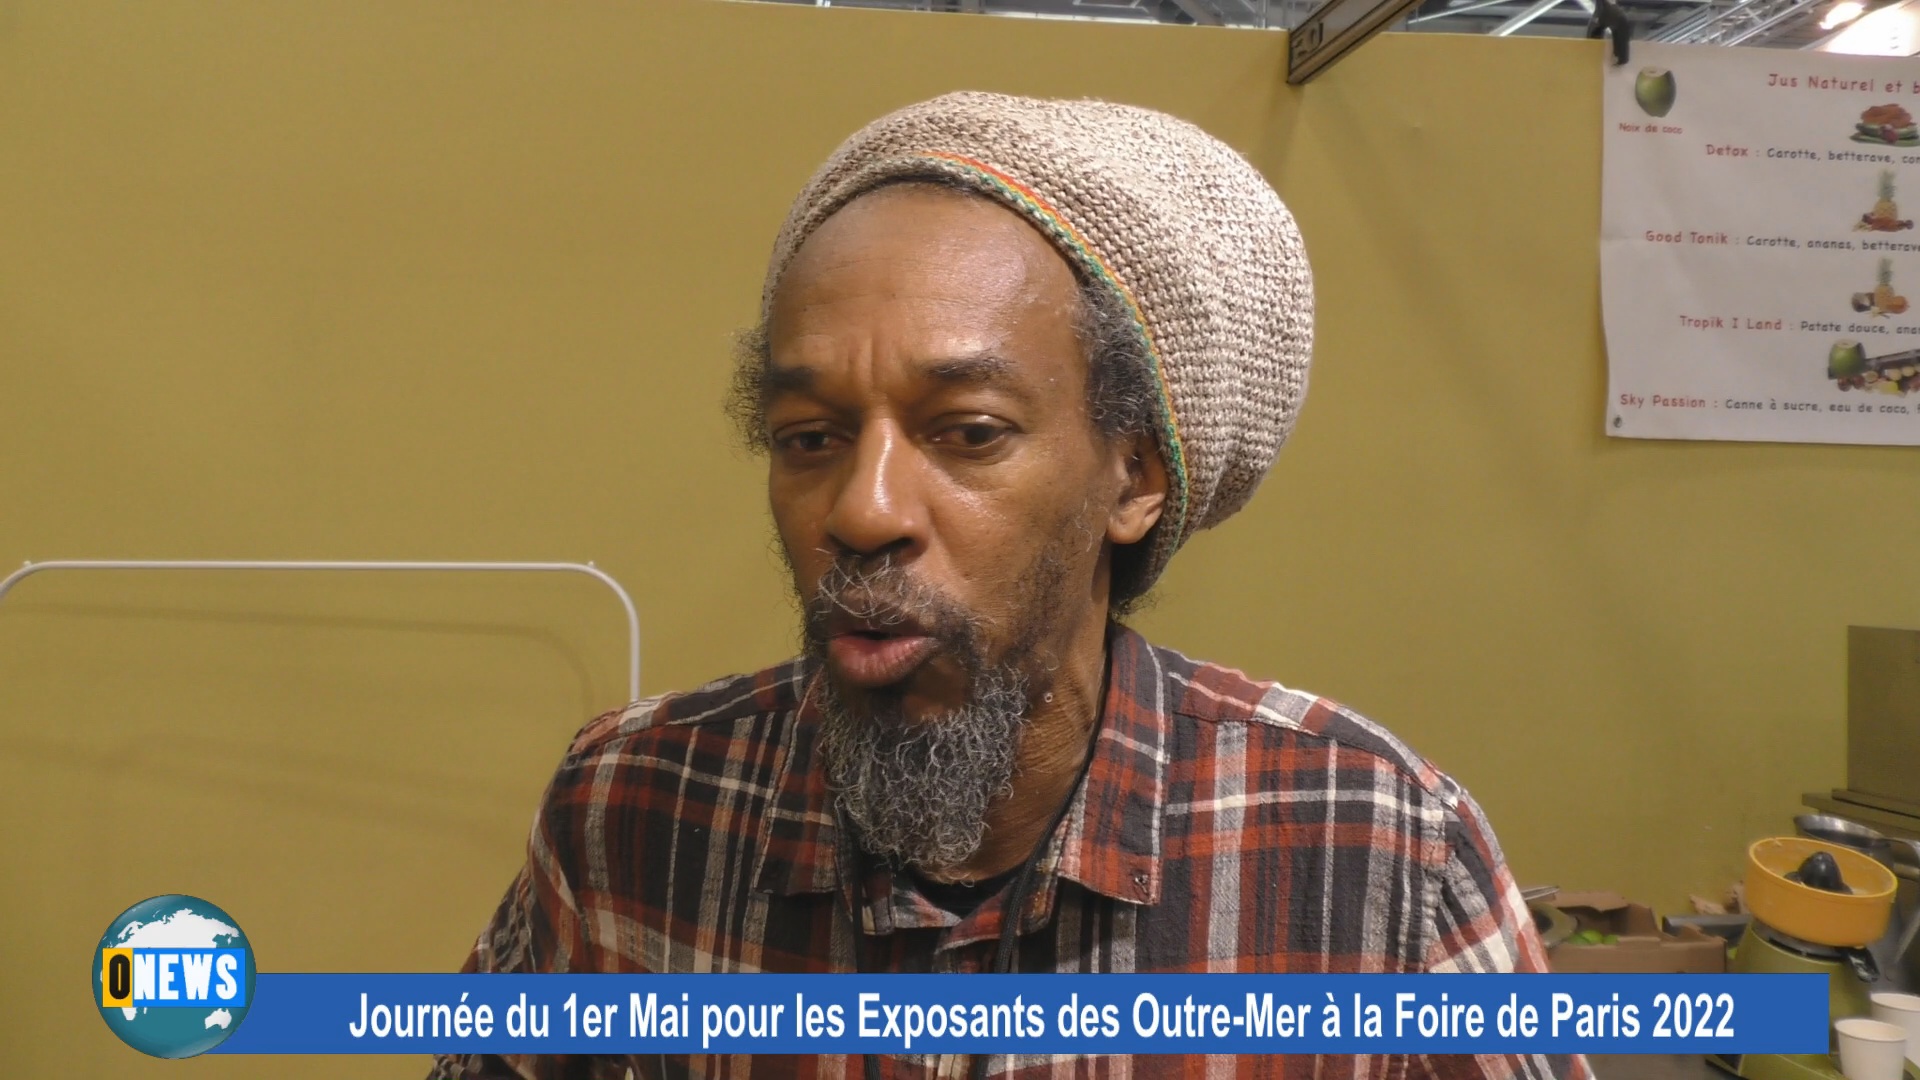 [Vidéo] Onews Hexagone. Foire de Paris avec des exposants de Guadeloupe et Martinique